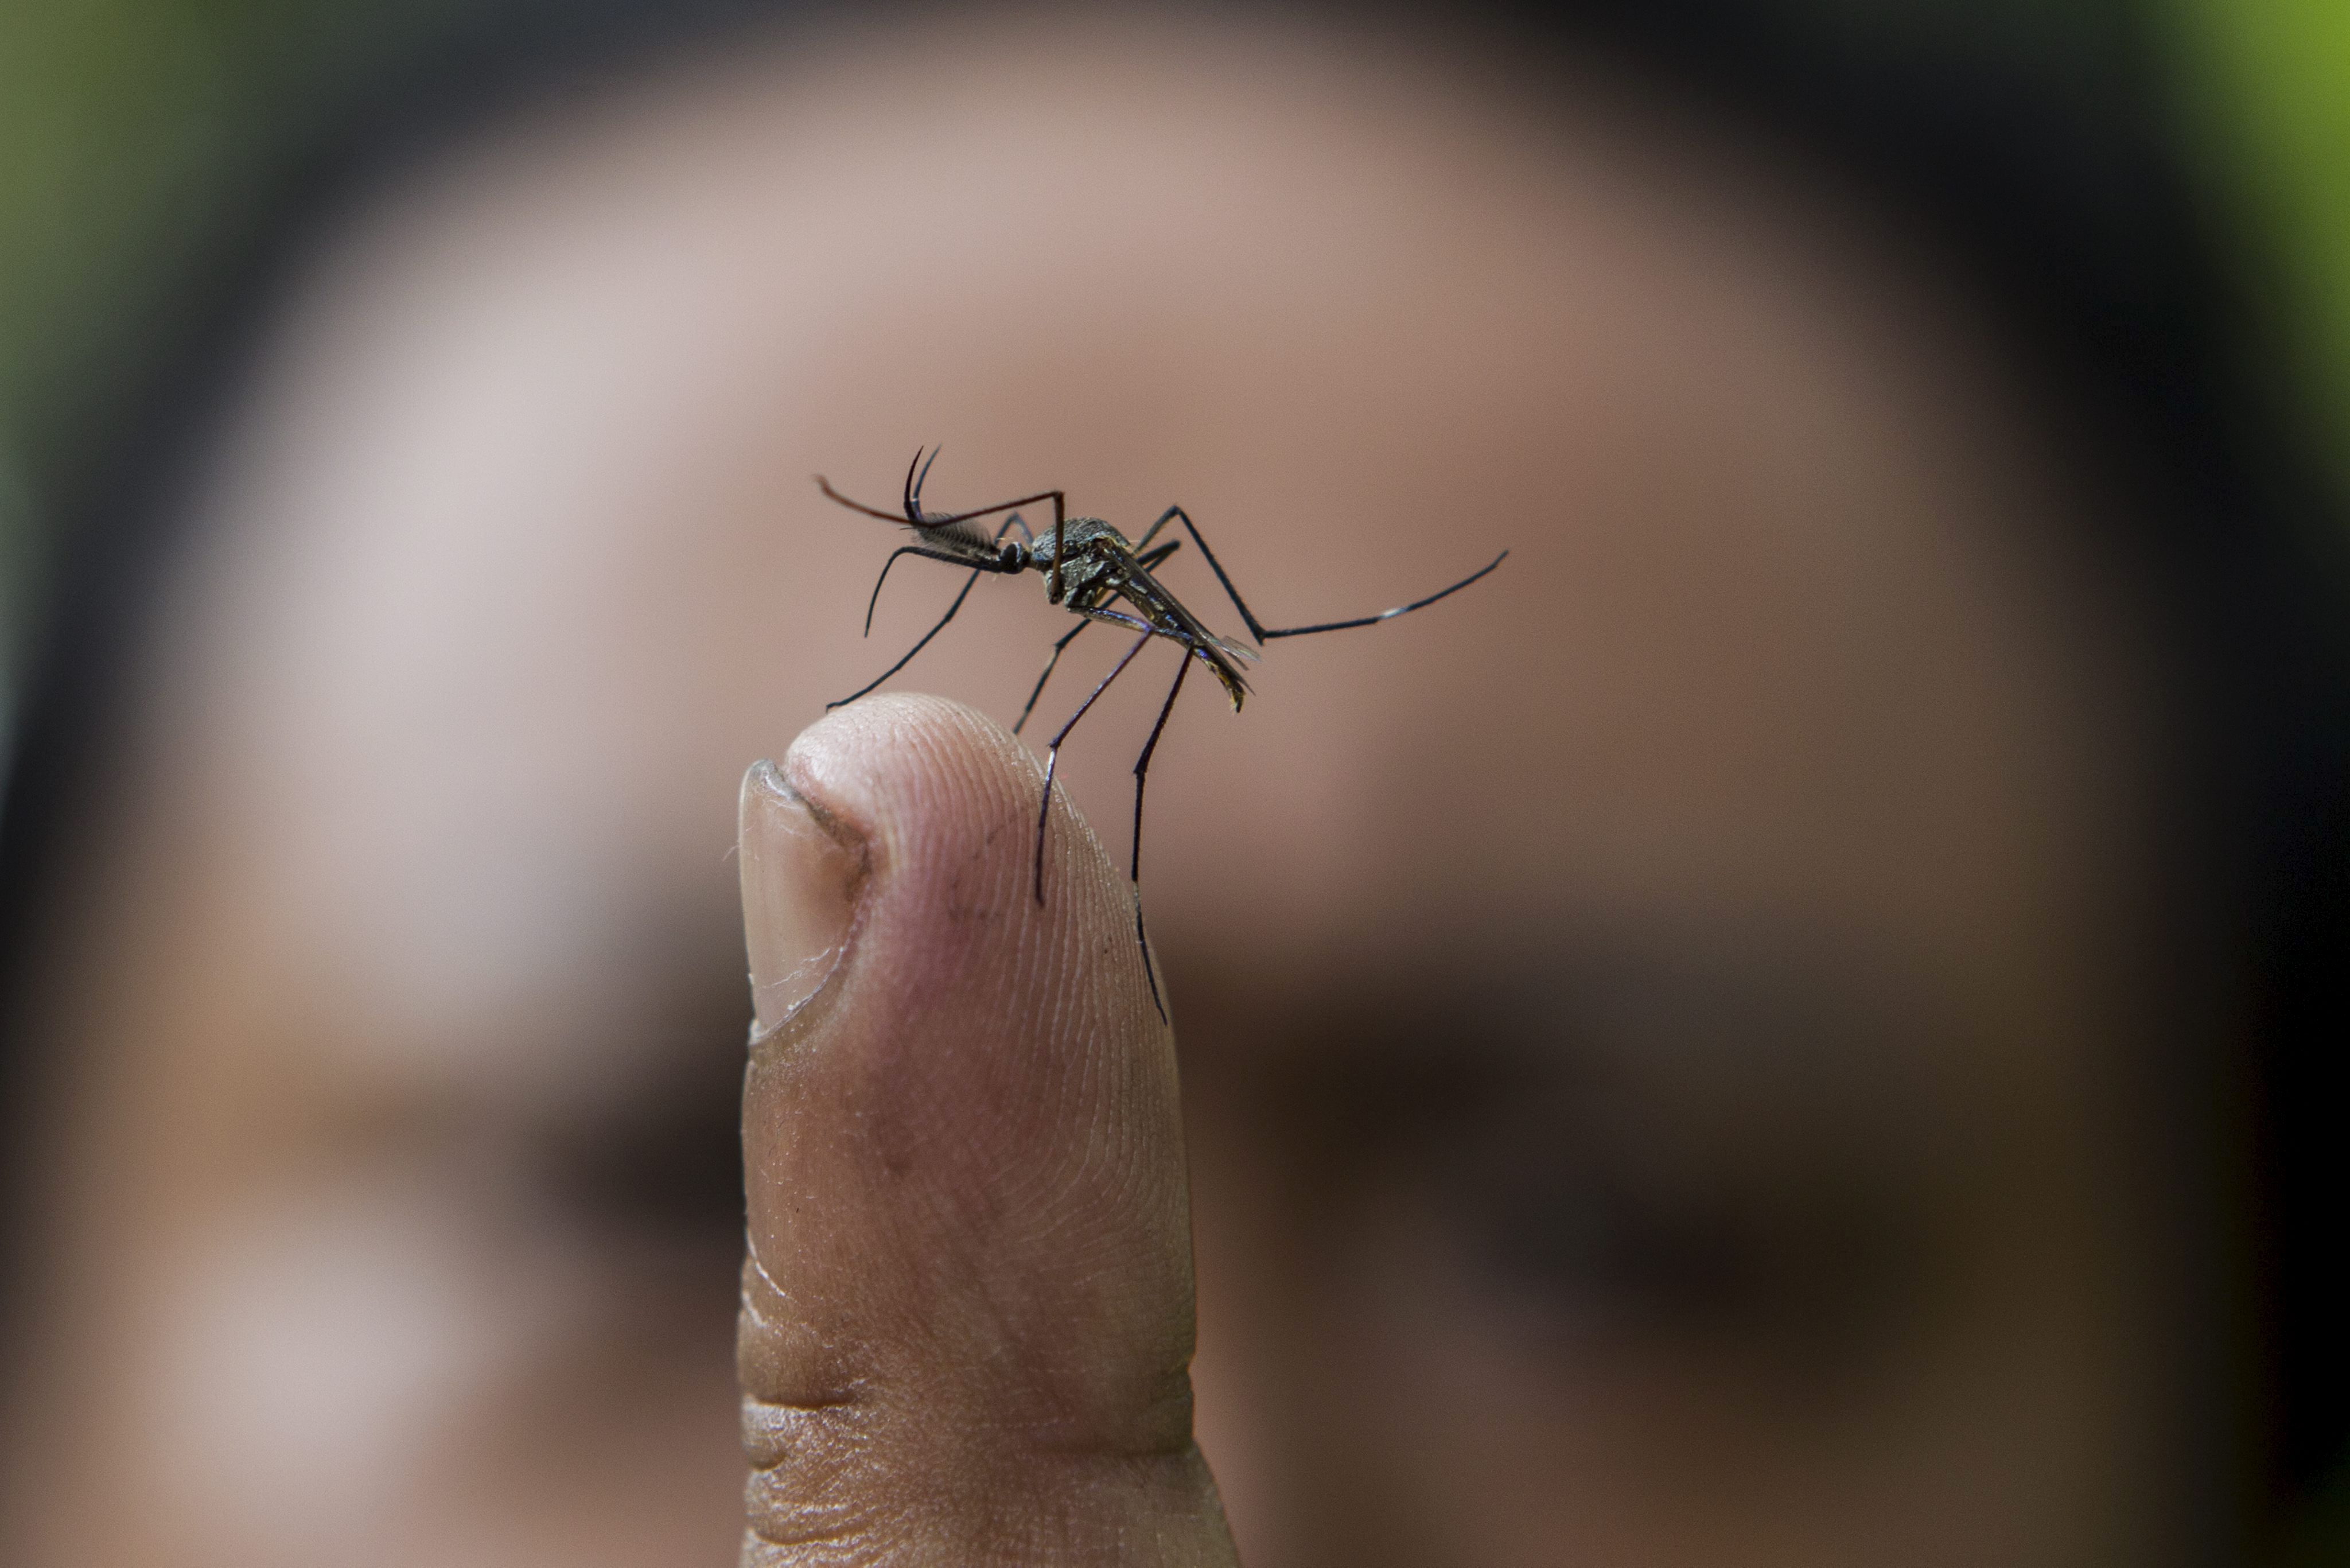 YUS03 PUCHONG (MALASIA) 30/07/2012.- Plano detalle de un mosquito del gÃ©nero Toxorhynchites (Toxo), un mosquito carnÃ­voro que comerÃ¡ larvas del mosquito causante del dengue, en Puchong, cerca de Kuala Lumpur (Malasia) hoy, lunes 30 de julio de 2012. La larva de las especies de mosquito toxo fue escogida debido a su dieta basada en larvas de mosquitos de otras especies y ademÃ¡s este mosquito vive en el mismo hÃ¡bitat. SegÃºn la OrganizaciÃ³n Mundial de la Salud, se producen entre 50 y 100 millones de casos de dengue cada aÃ±o. EFE/Ahmad Yusni